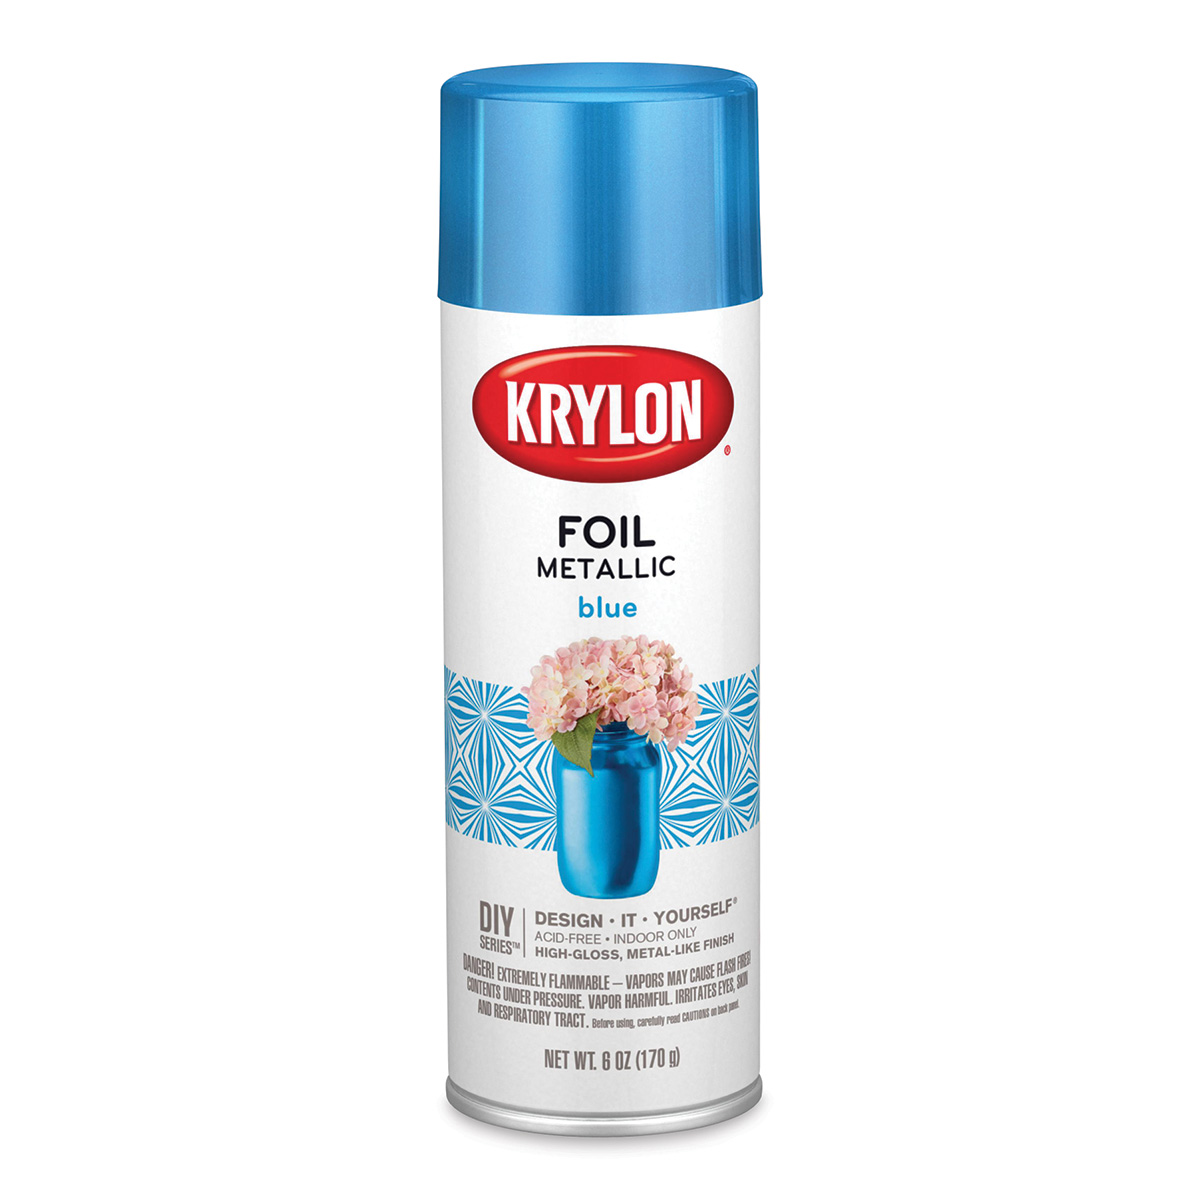 Krylon Foil Metallic Spray Paint - Blue, 6 oz